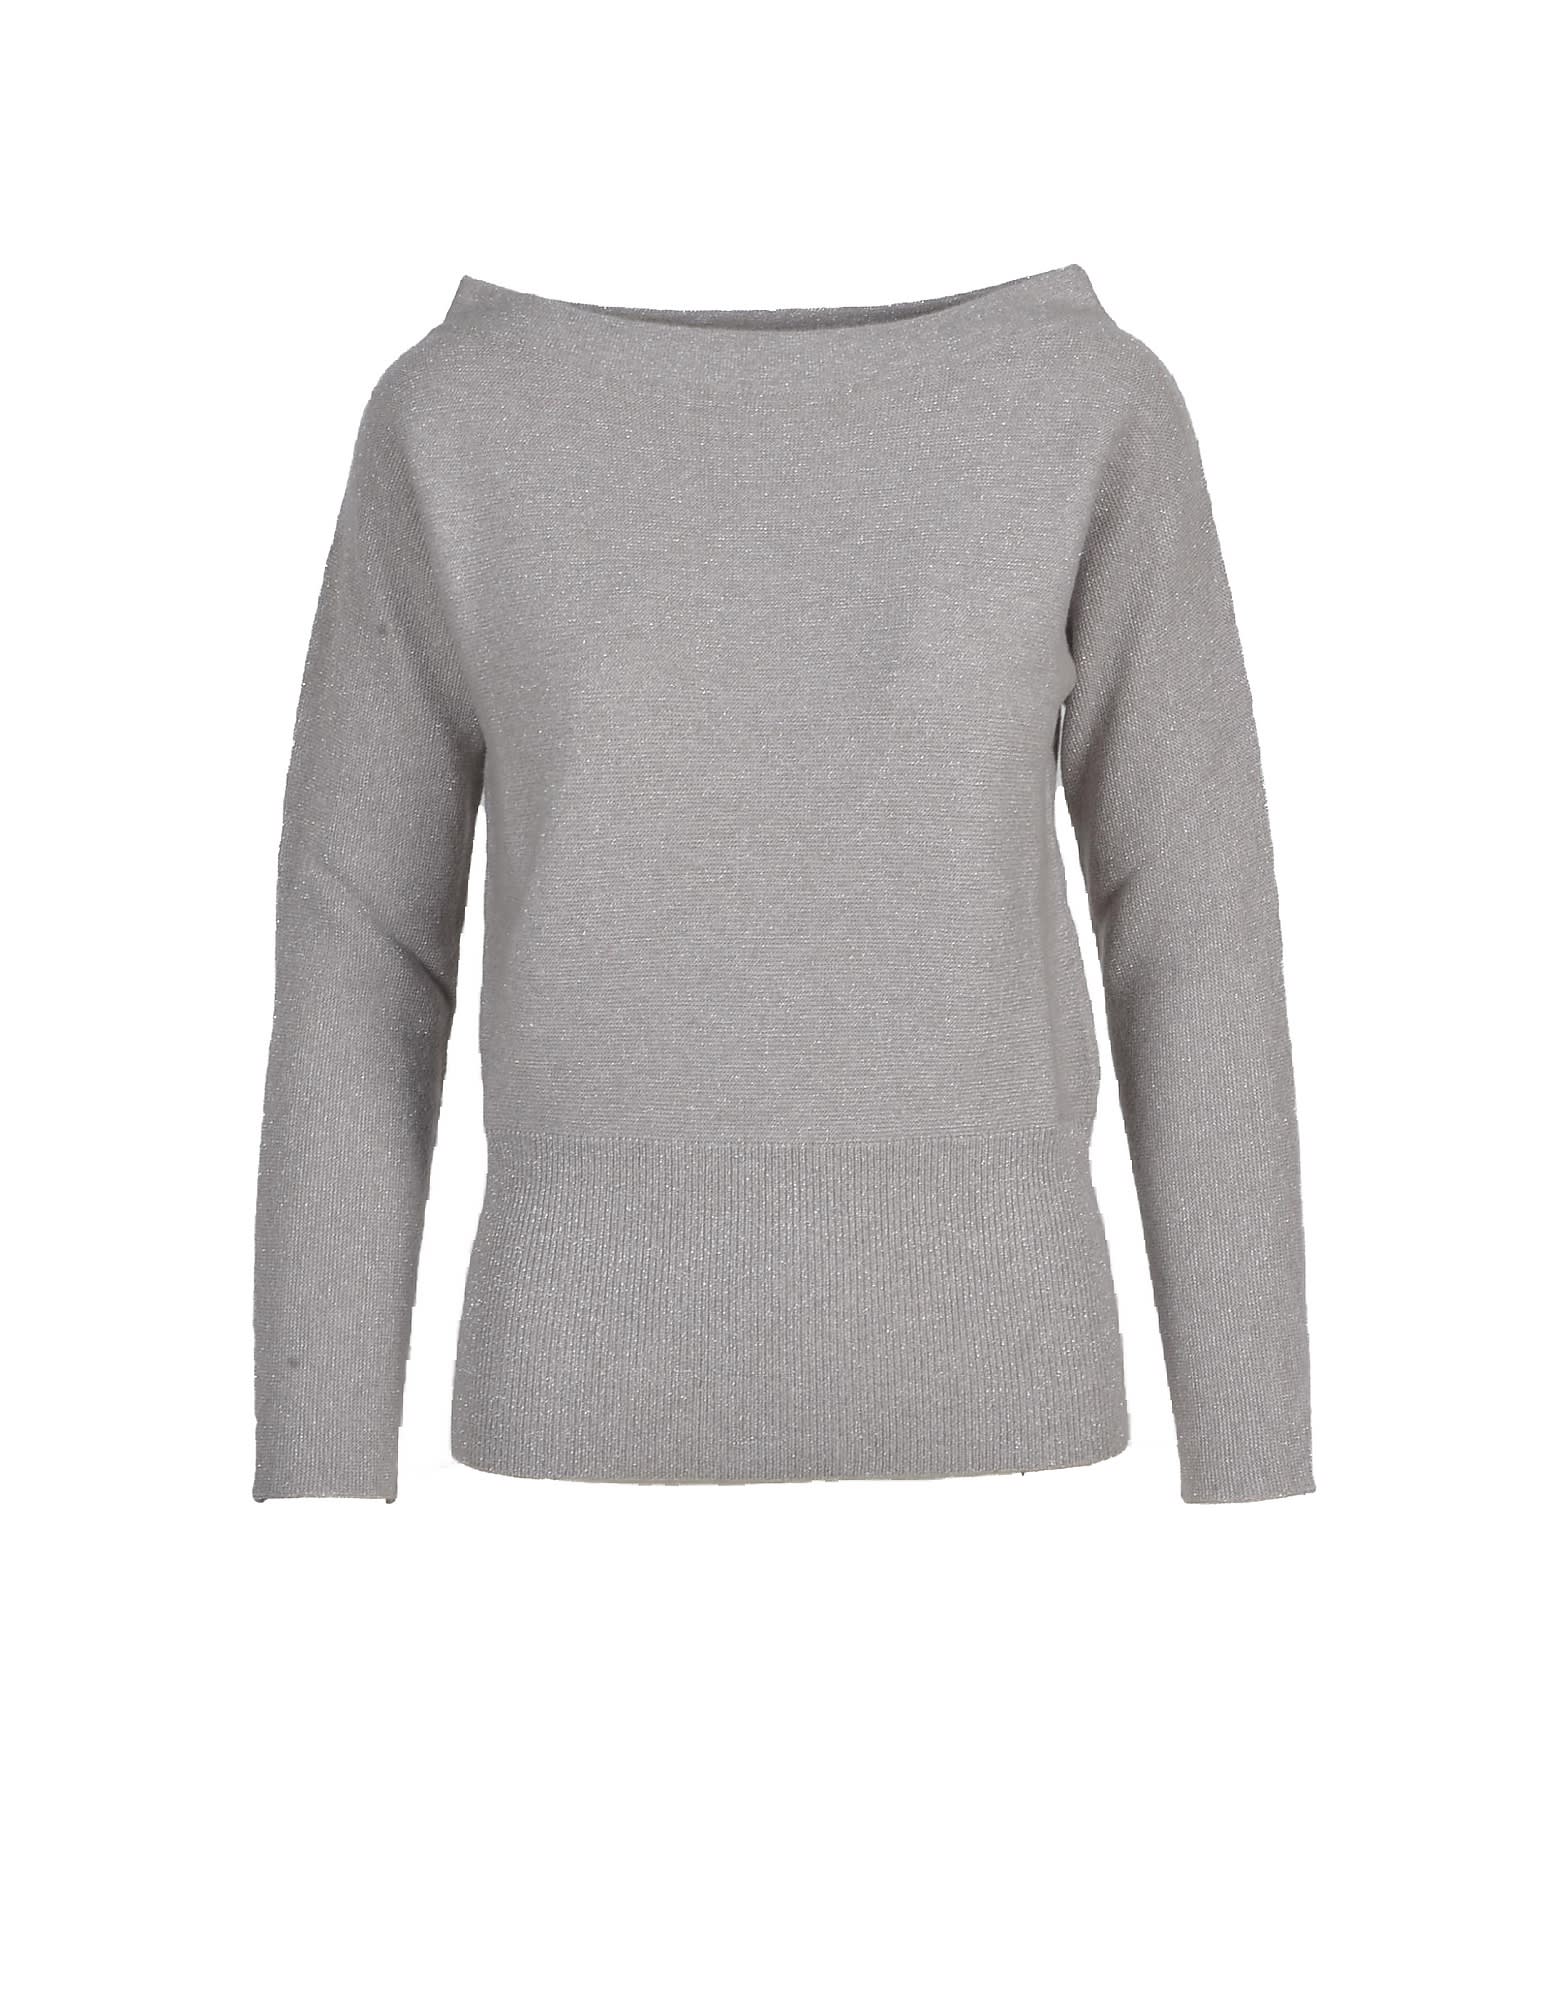 Fabiana Filippi Womens Gray Sweater